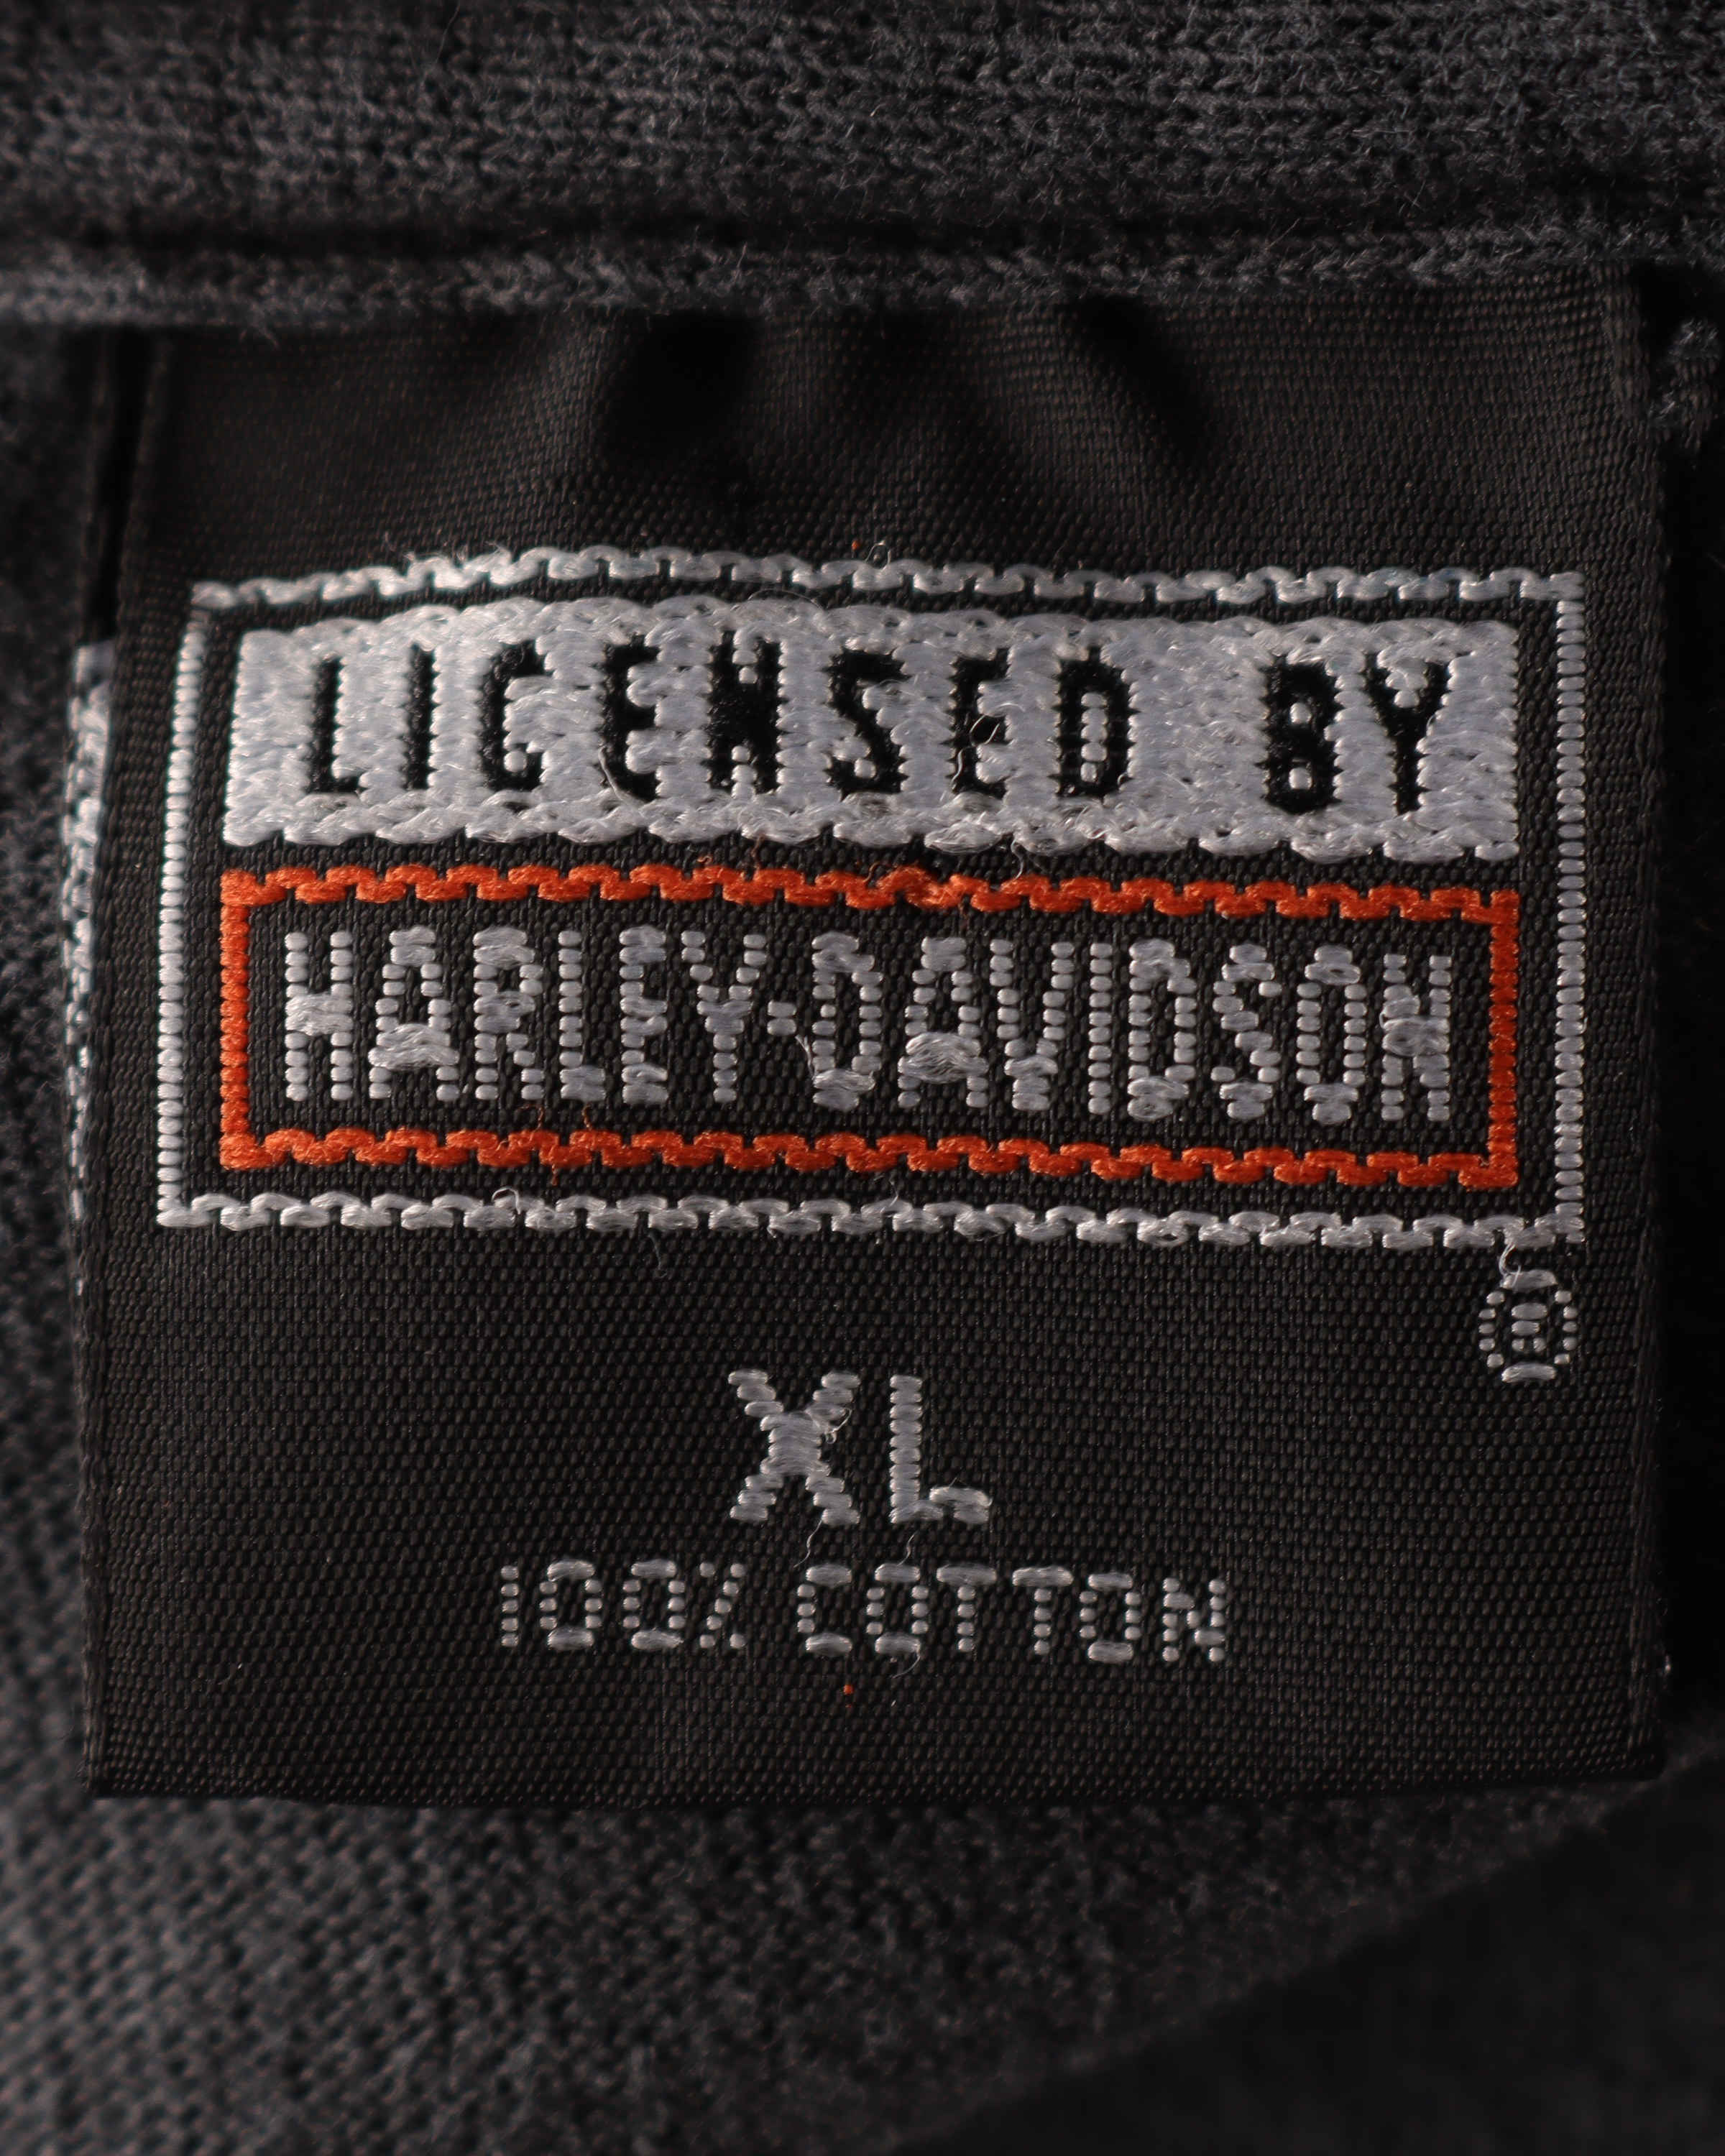 1980's Harley Davidson T-Shirt